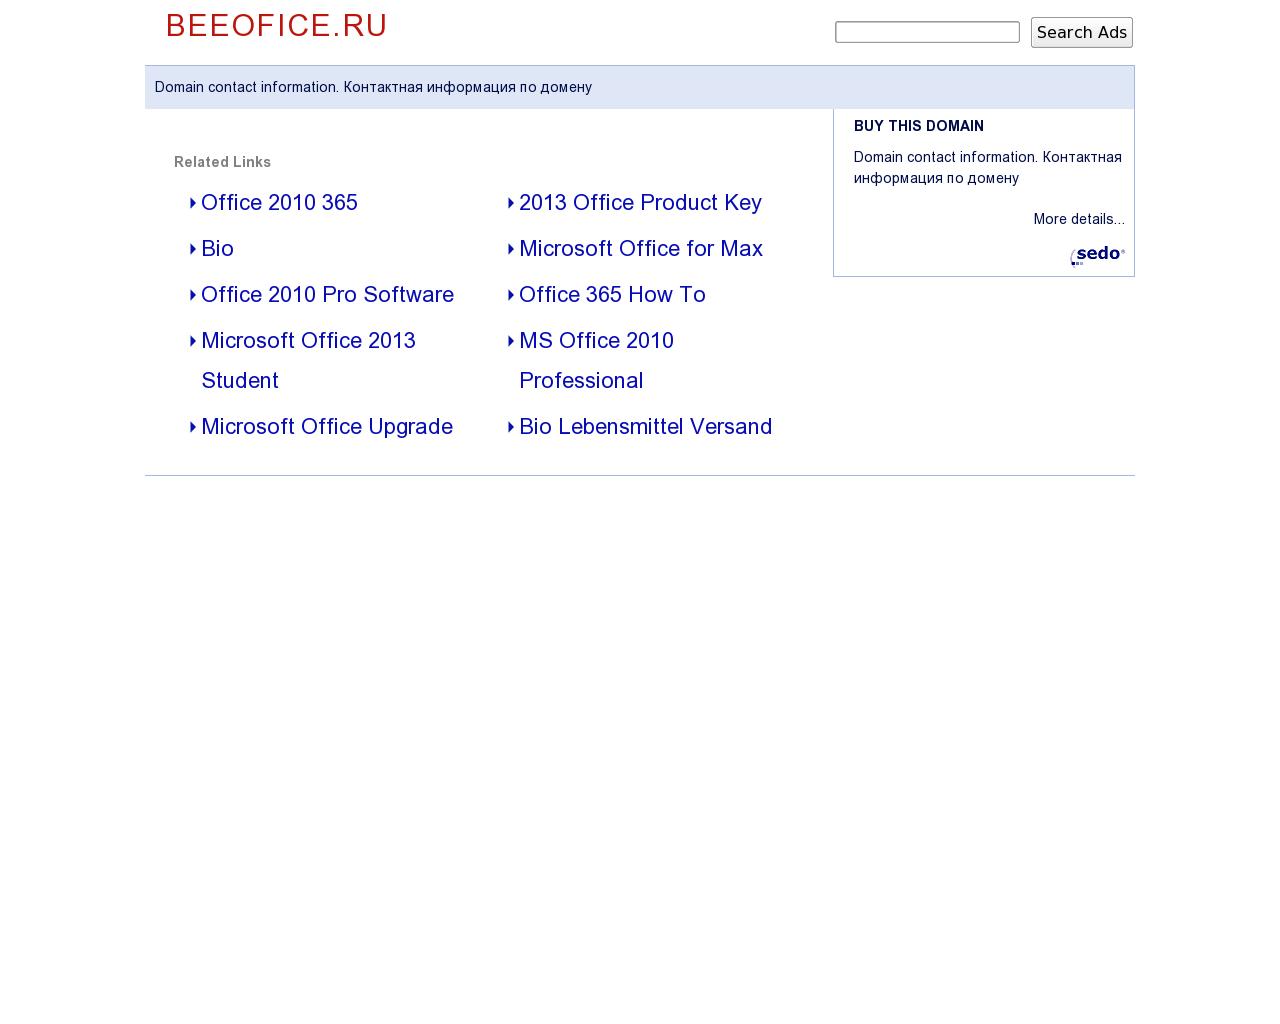 Изображение сайта beeofice.ru в разрешении 1280x1024